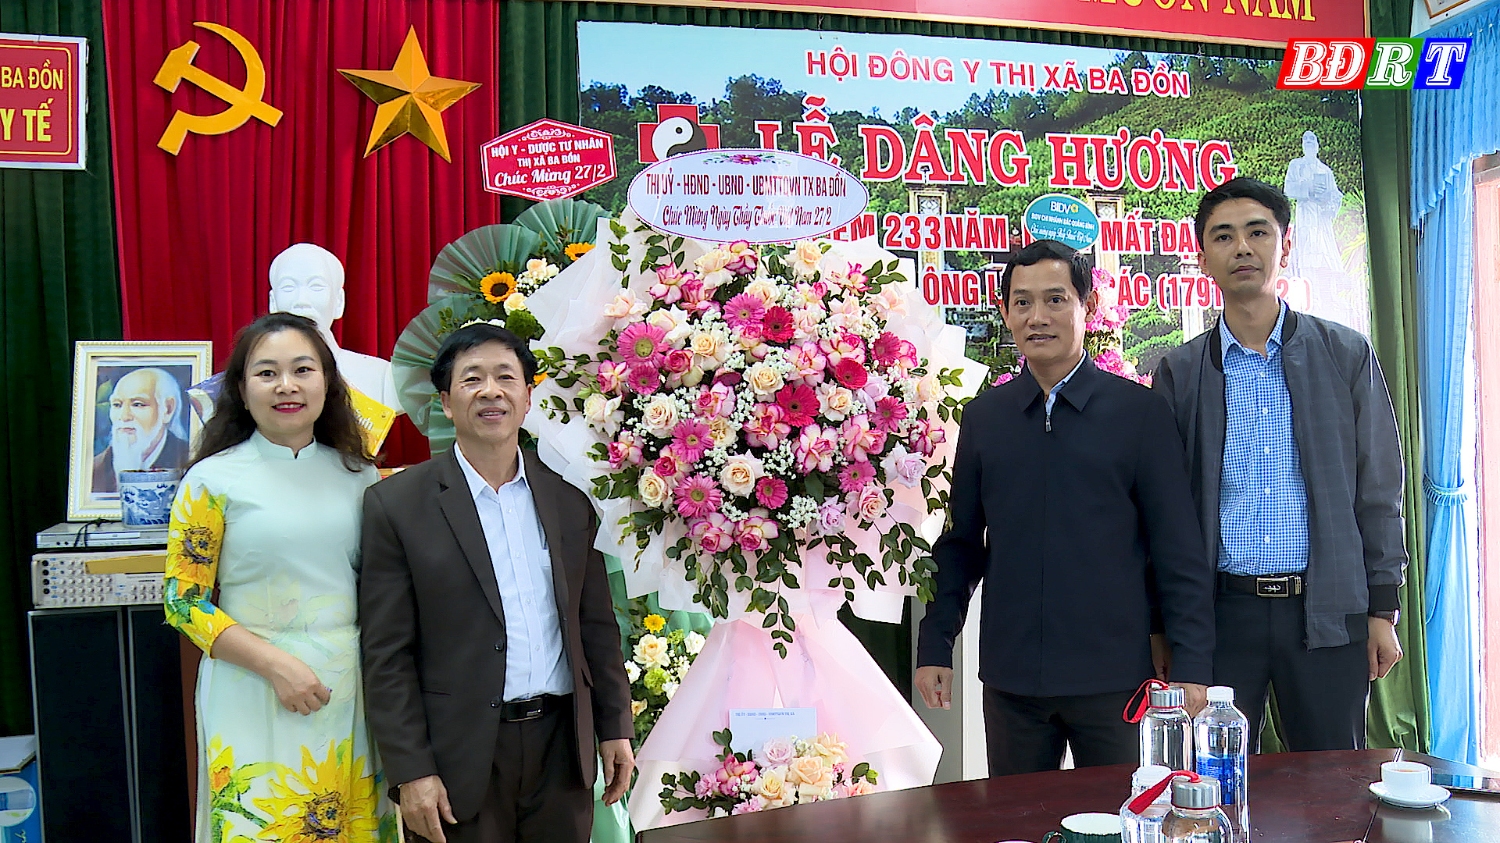 Đồng chí Nguyễn Văn Tình, Phó Chủ tịch UBND thị xã đã đến thăm, chúc mừng tập thể cán bộ, nhân viên, y, bác sĩ Phòng Y tế thị xã